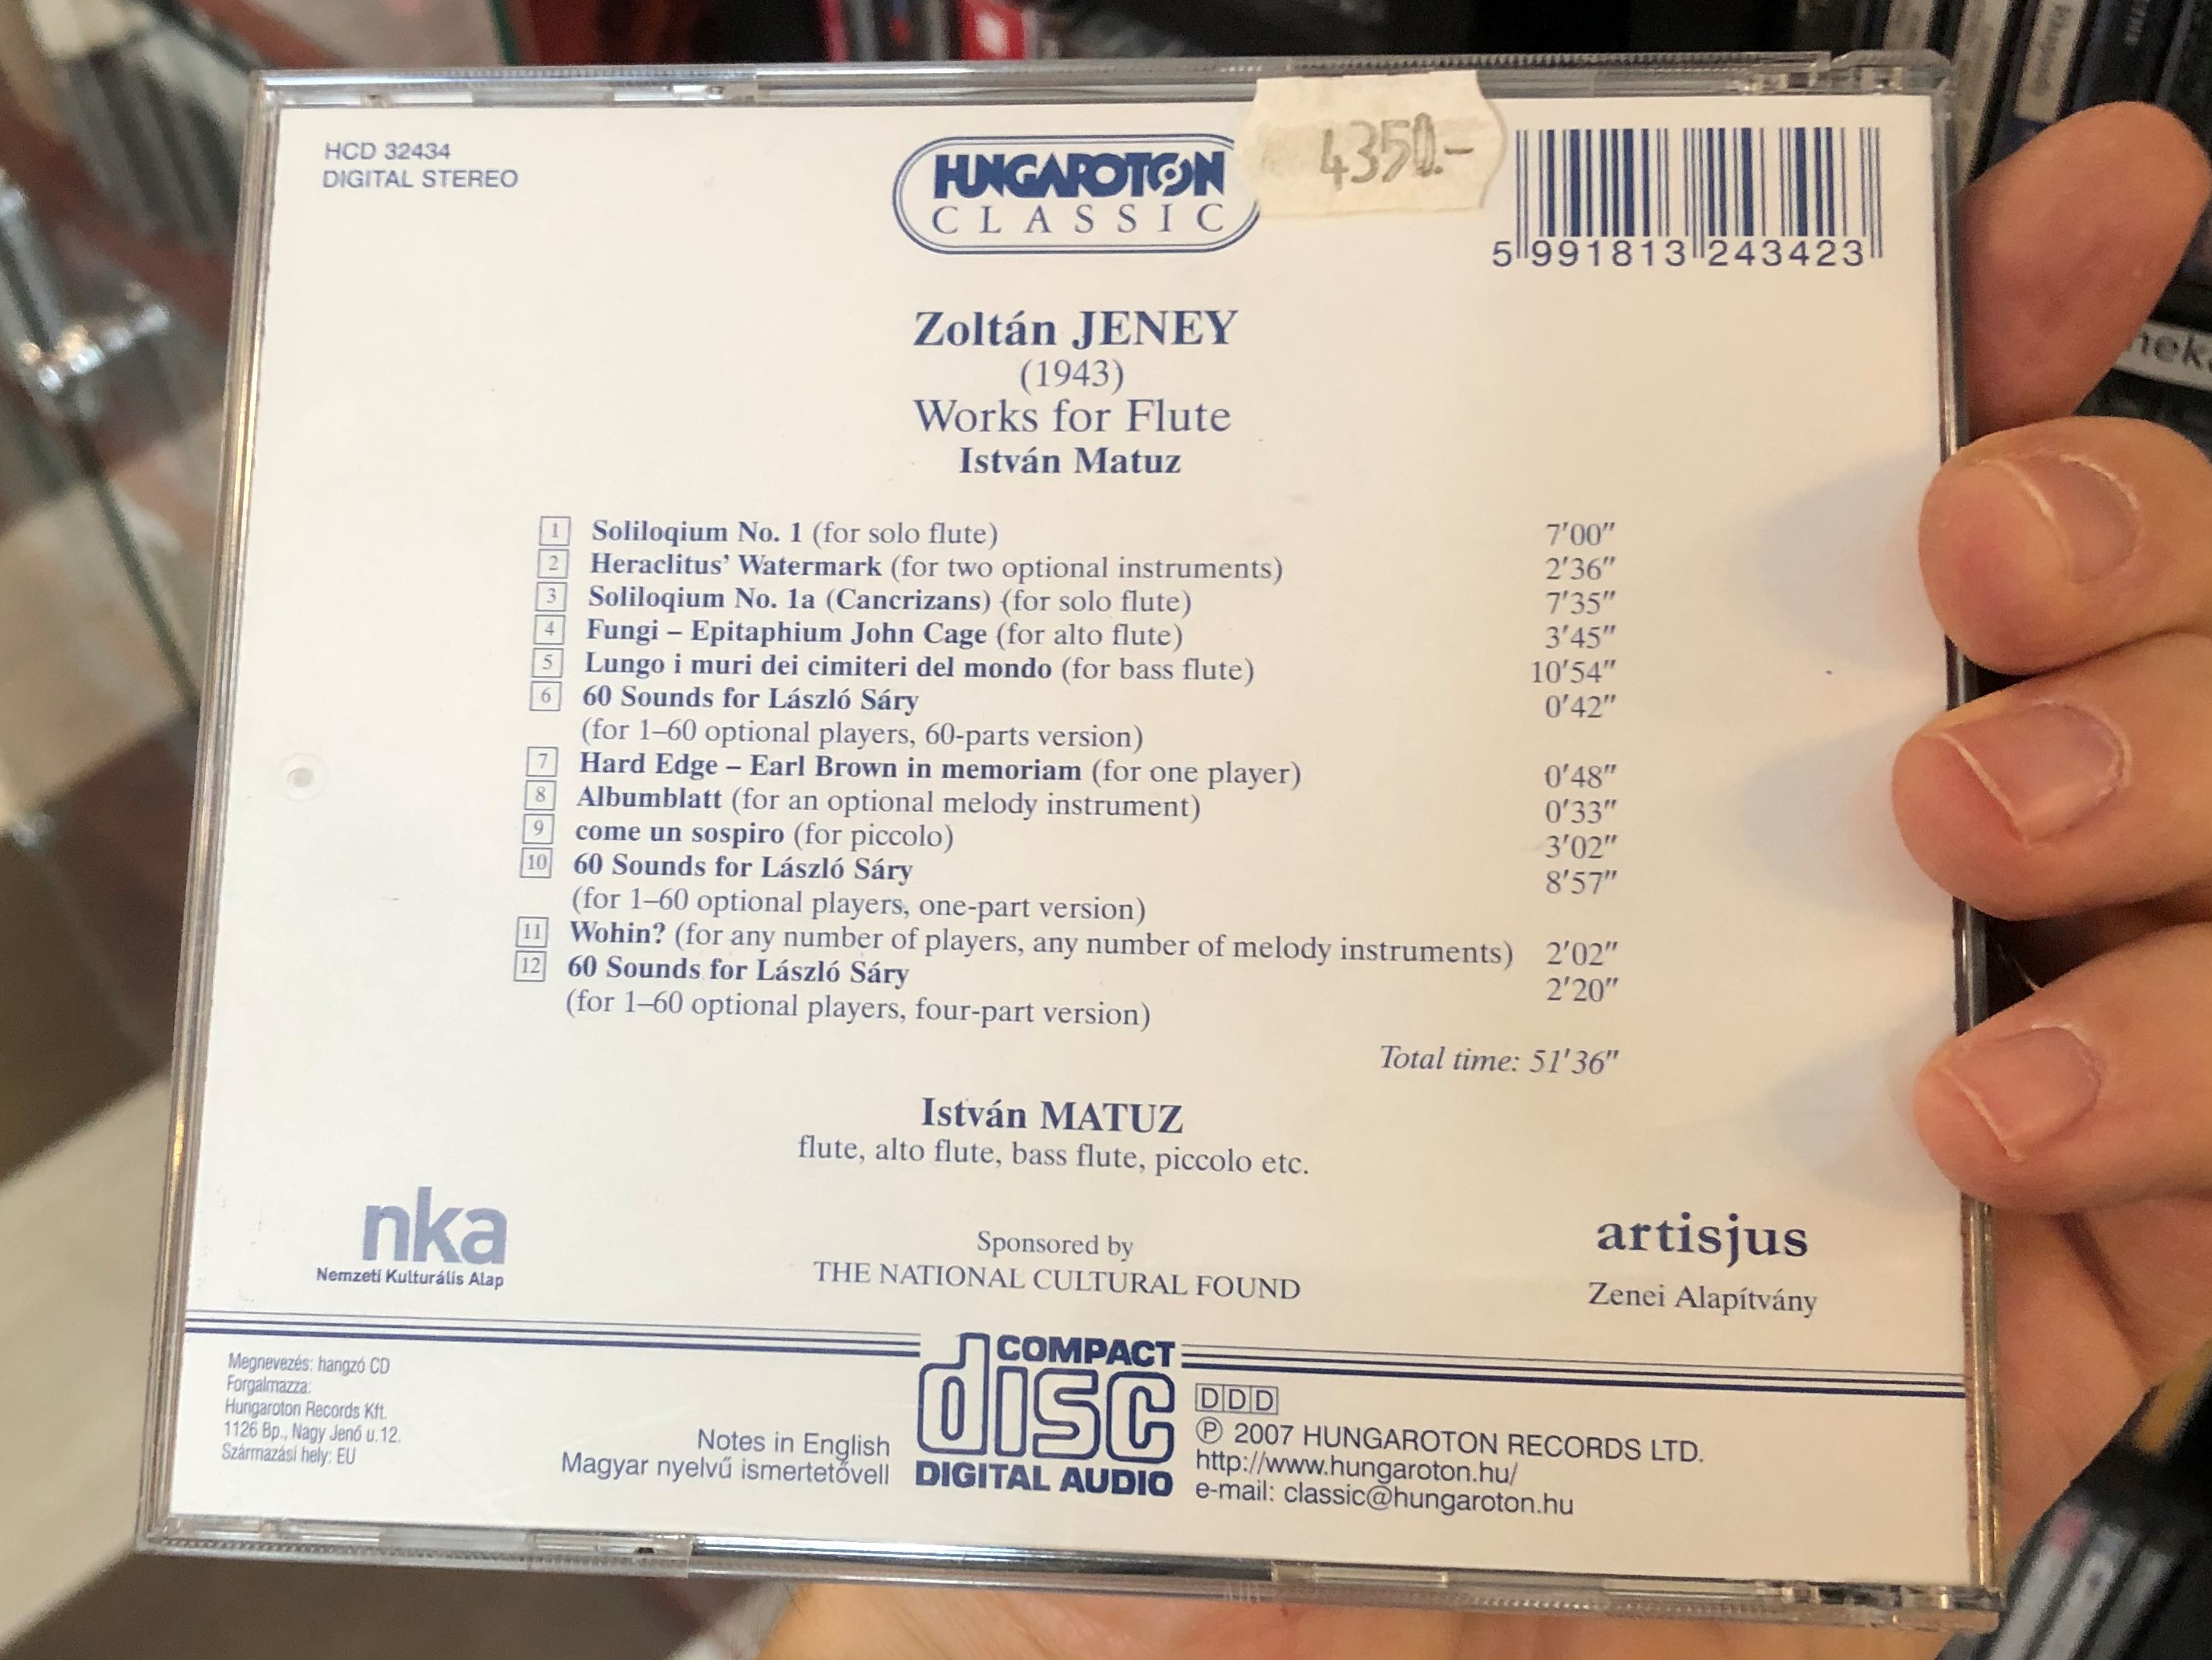 zolt-n-jeney-works-for-flute-istv-n-matuz-hungaroton-classic-audio-cd-2007-stereo-hcd-32434-2-.jpg